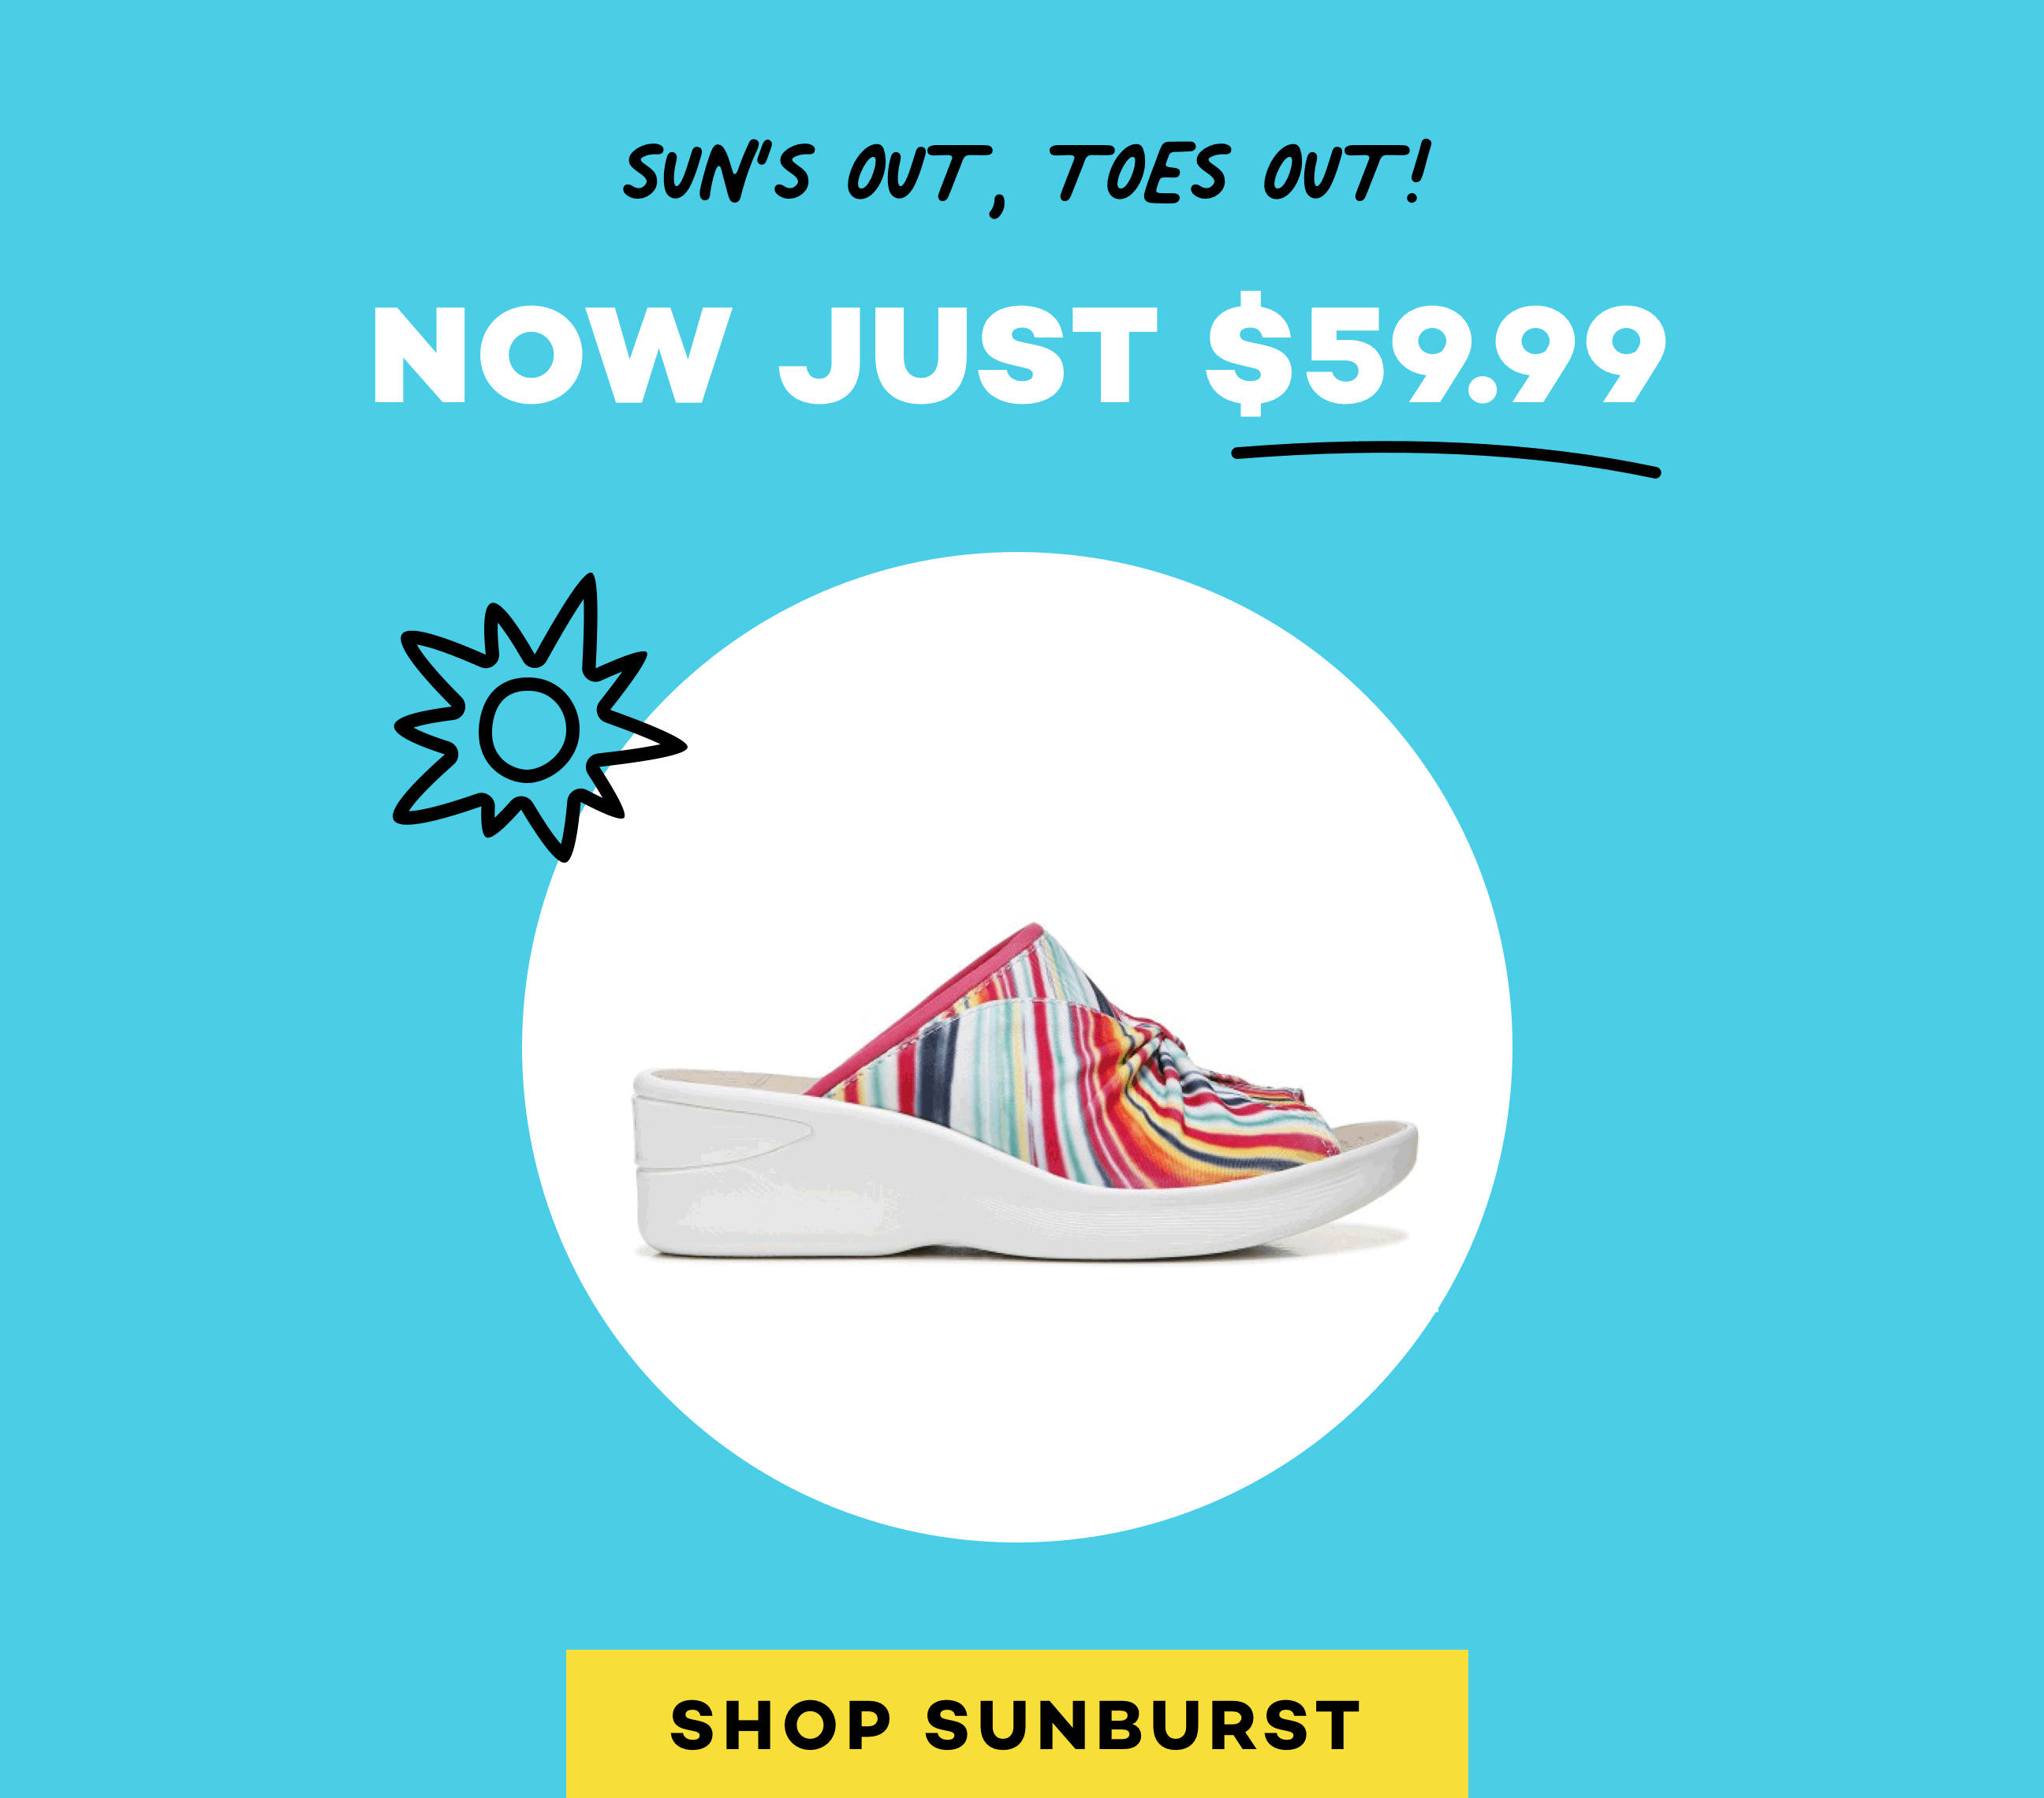 Sunburst Women's Sandal Marked Down to $59.99